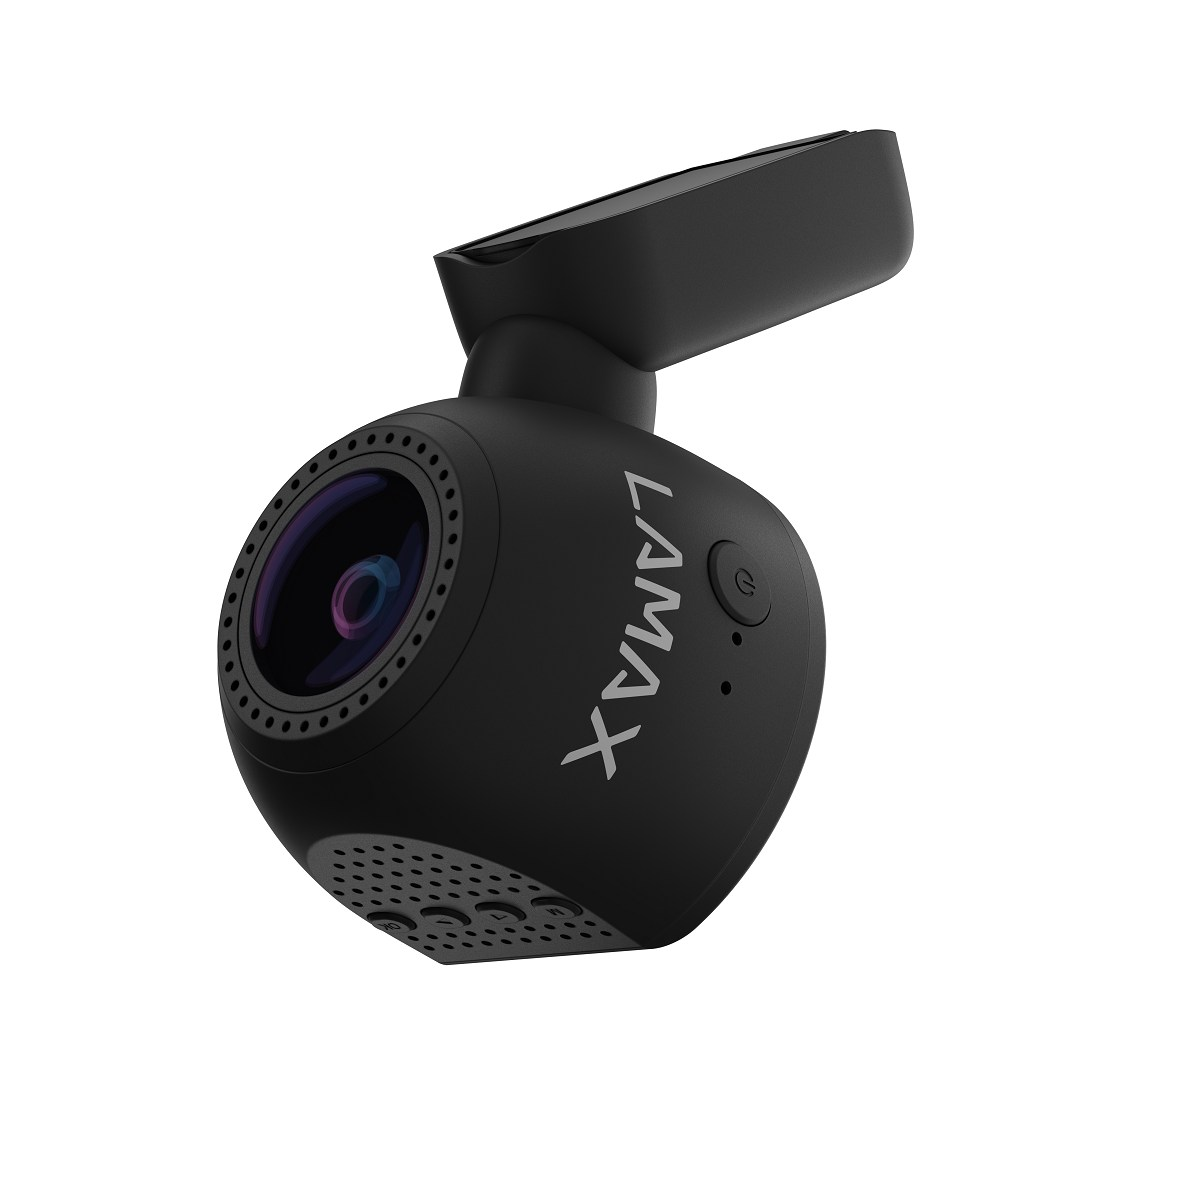 LAMAX T6 GPS WiFi Dashcam Display